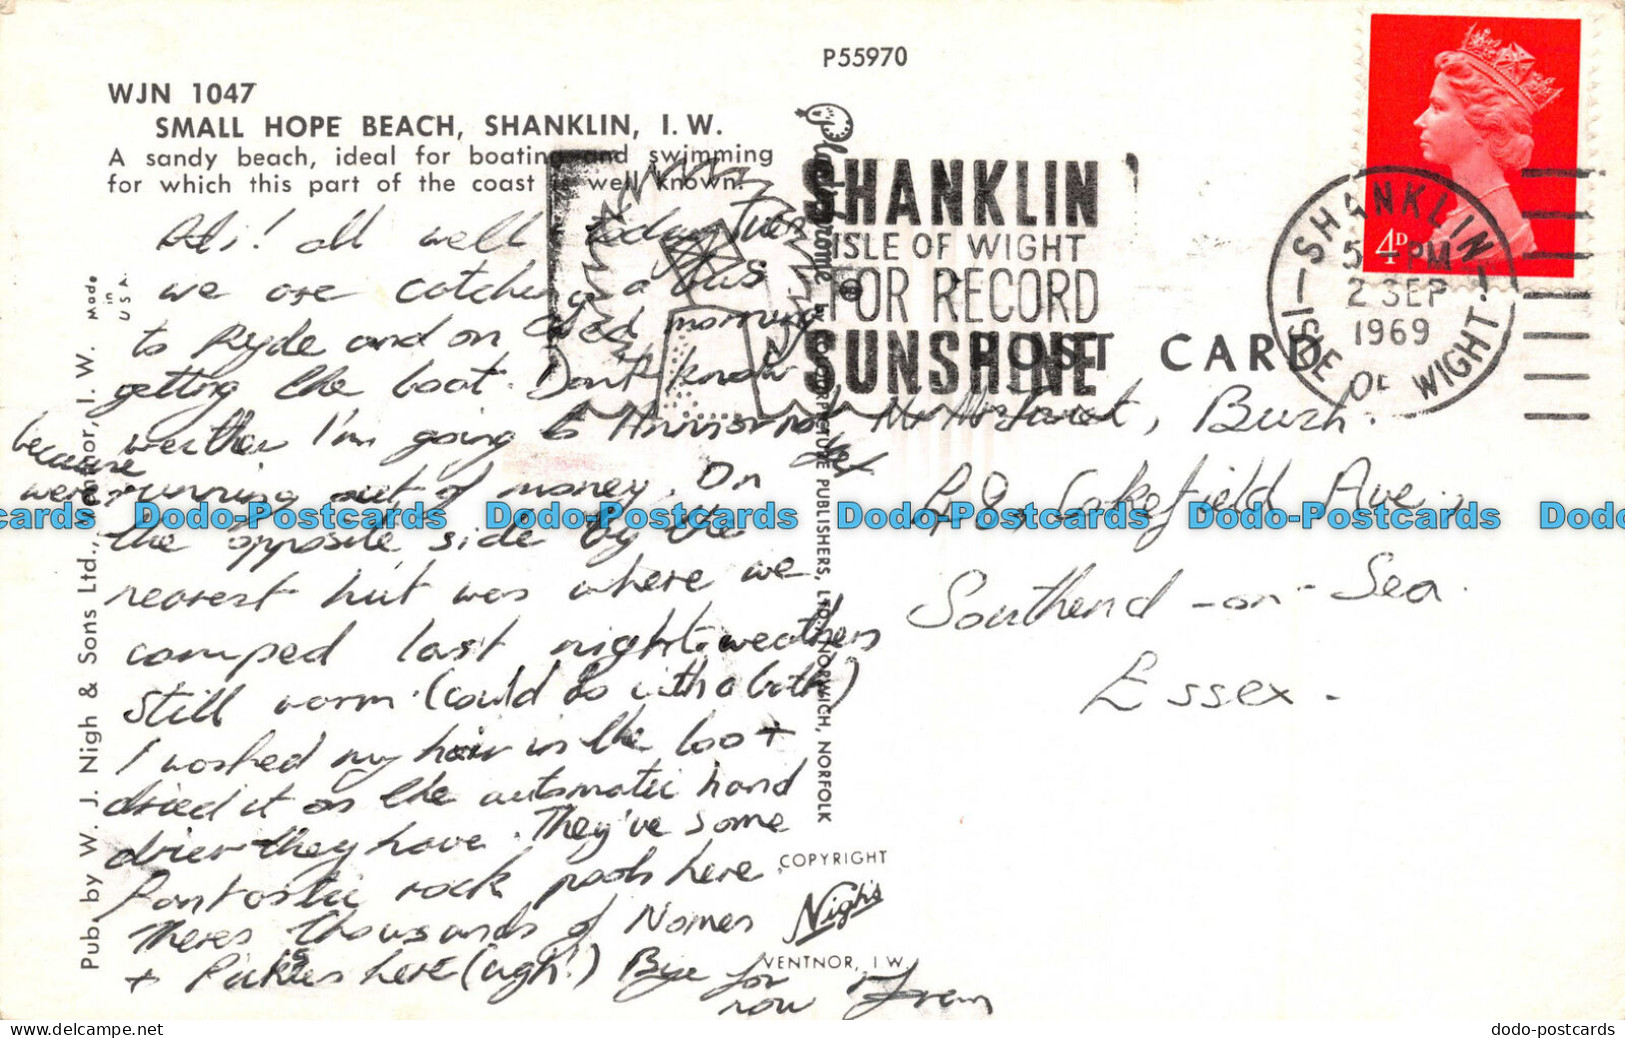 R065149 Small Hope Beach. Shanklin. I. W. Nigh. 1969 - World